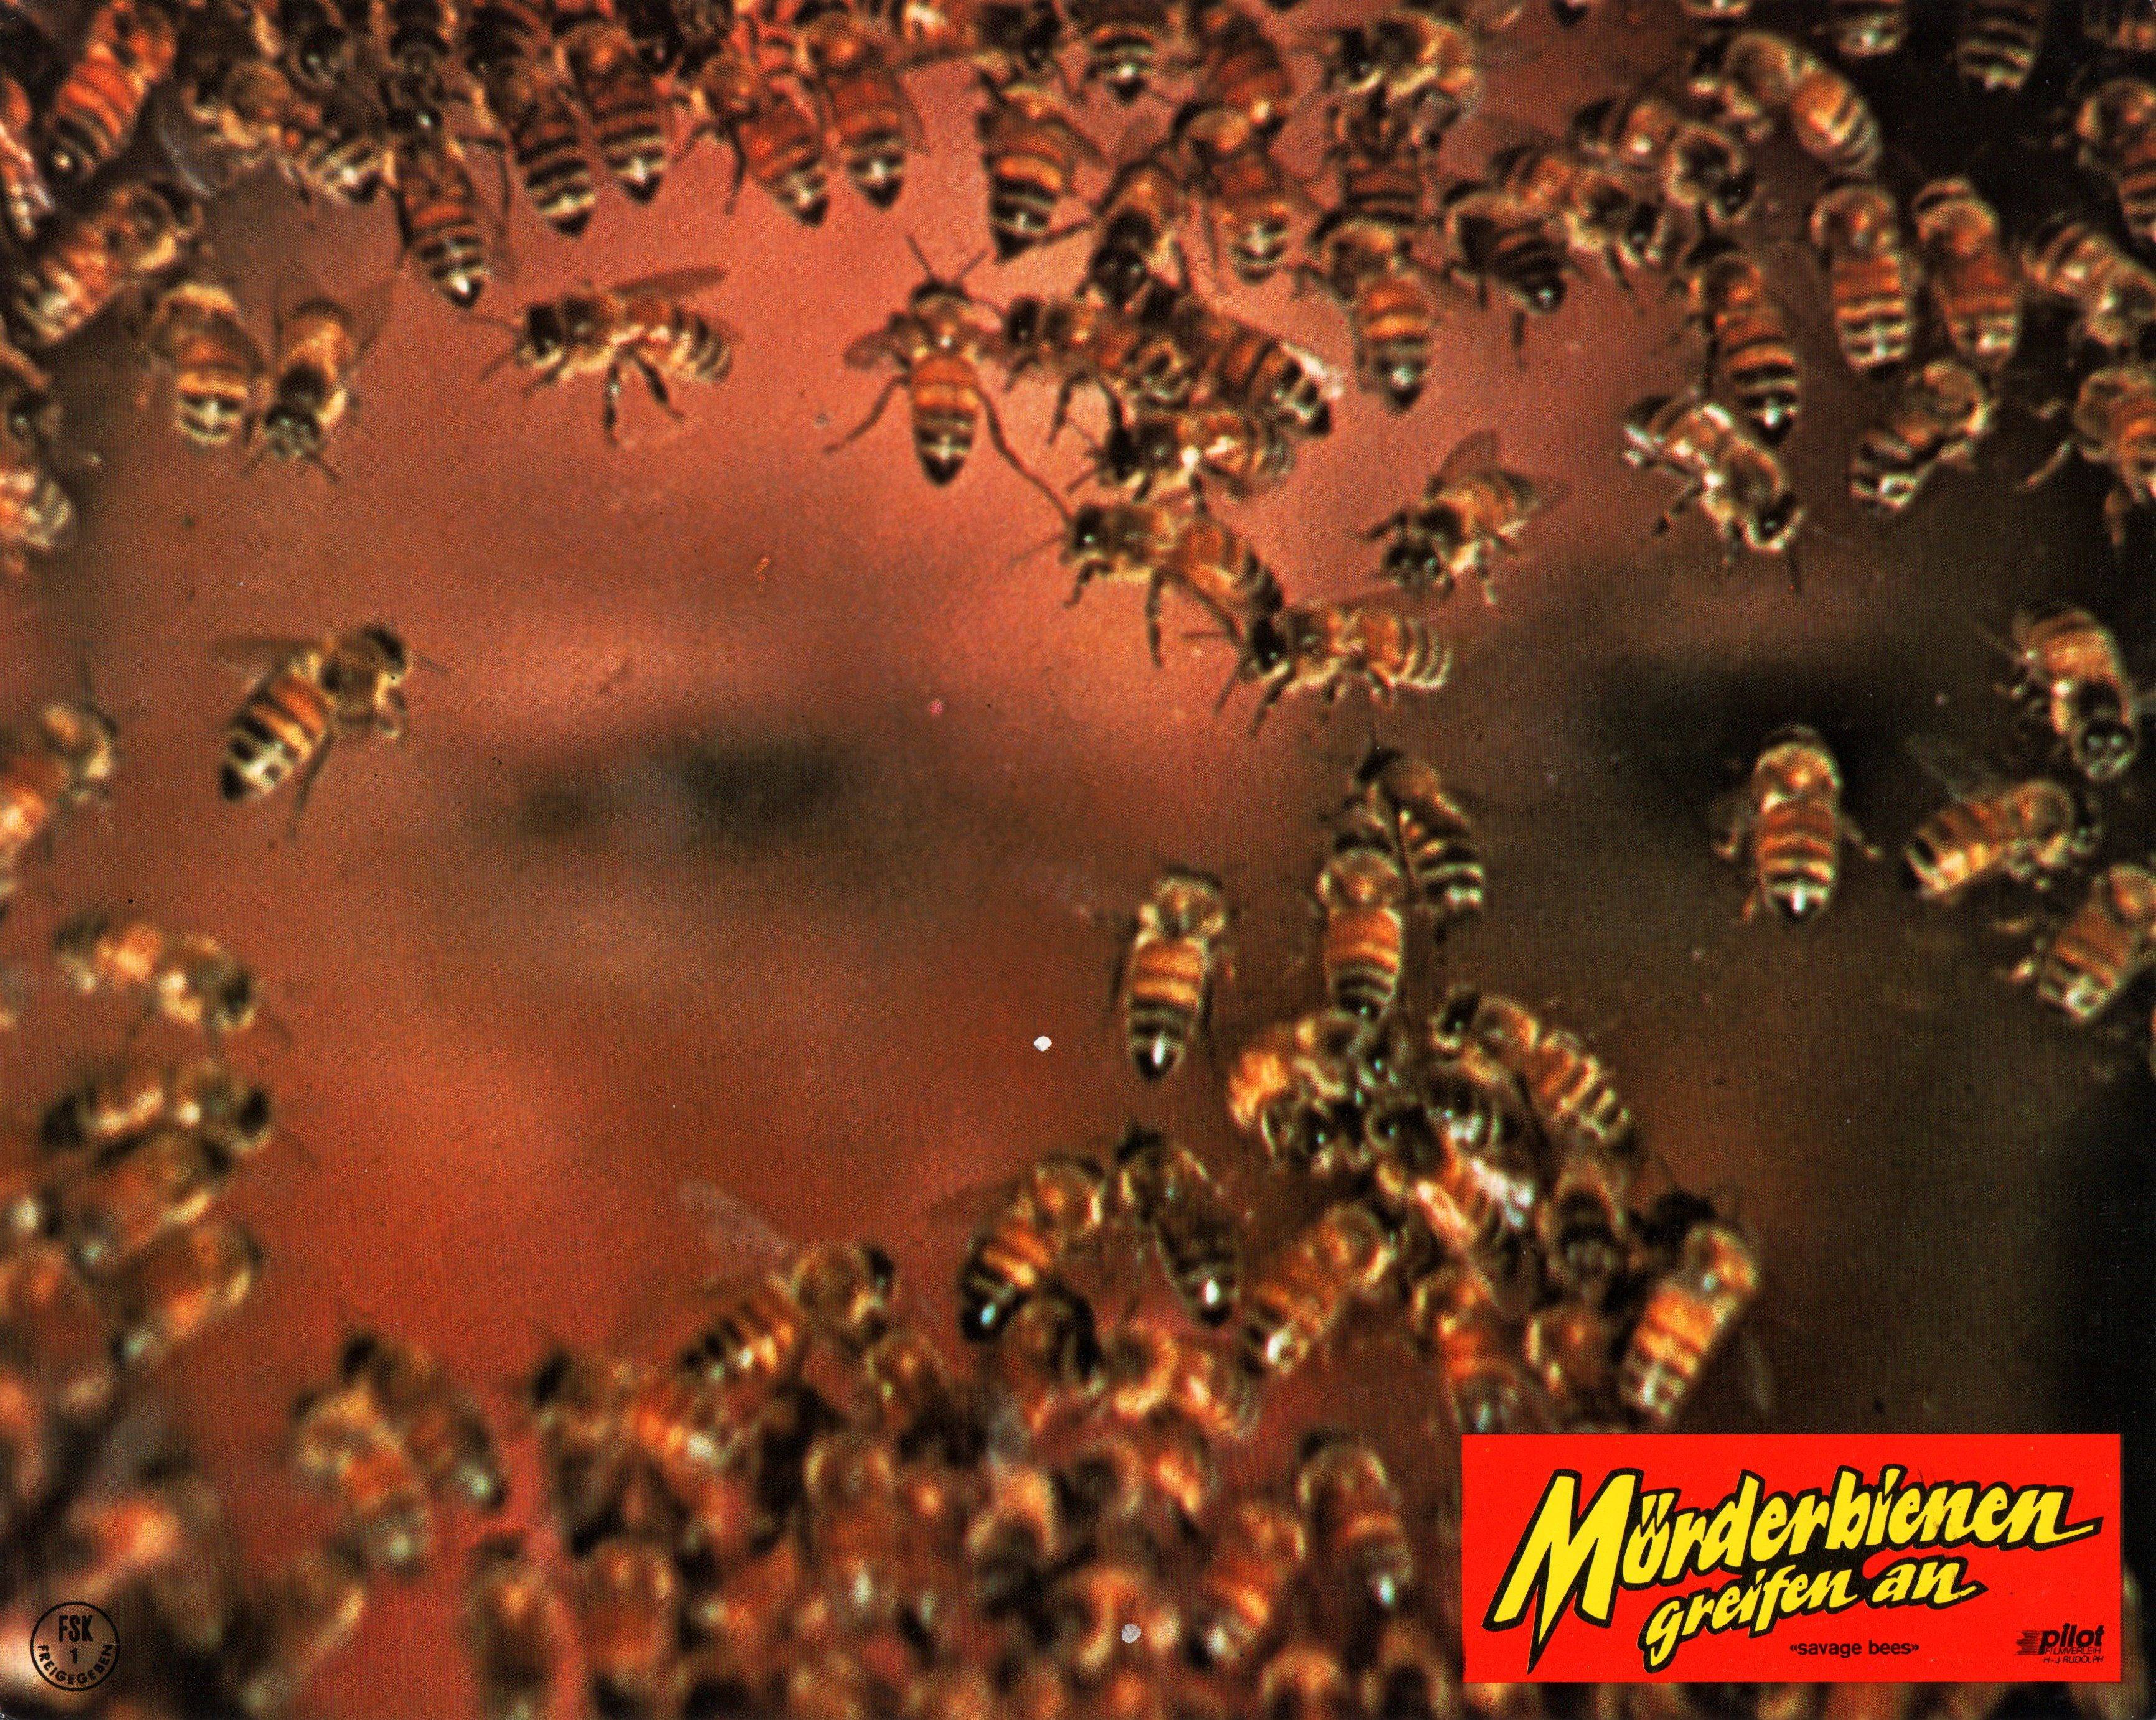 Mörderbienen greifen an (The Savage Bees)